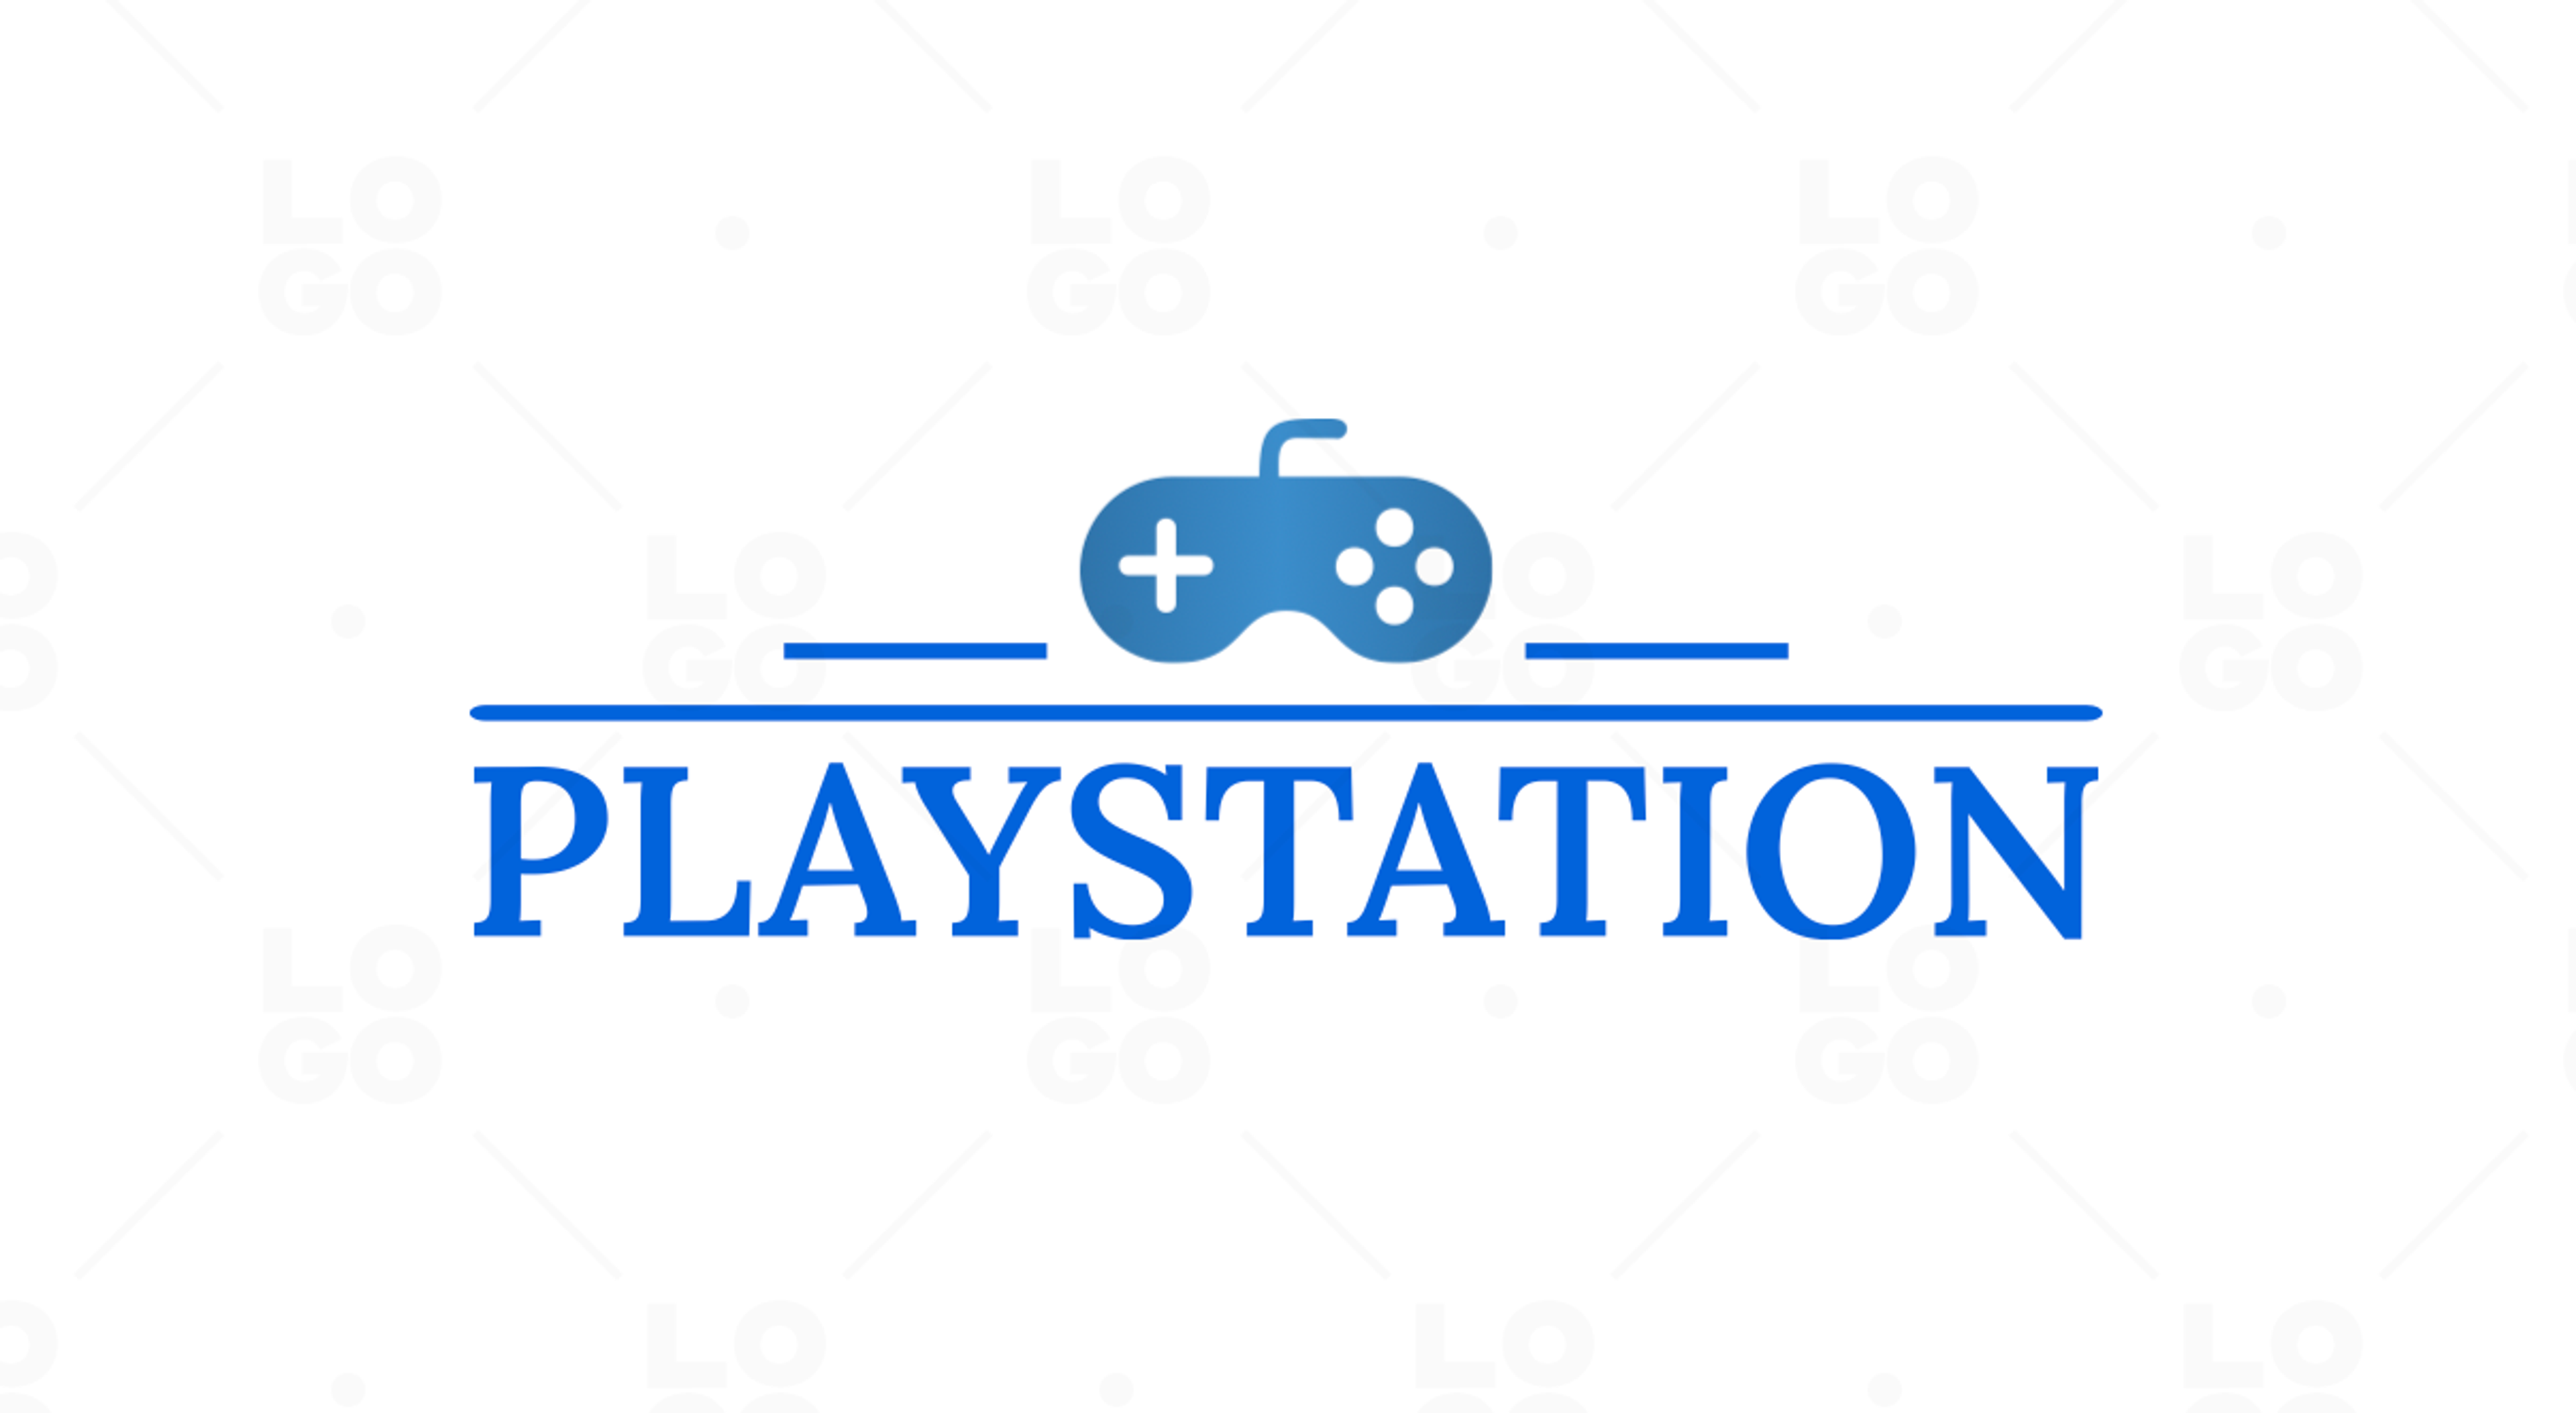 PlayStation logo variation